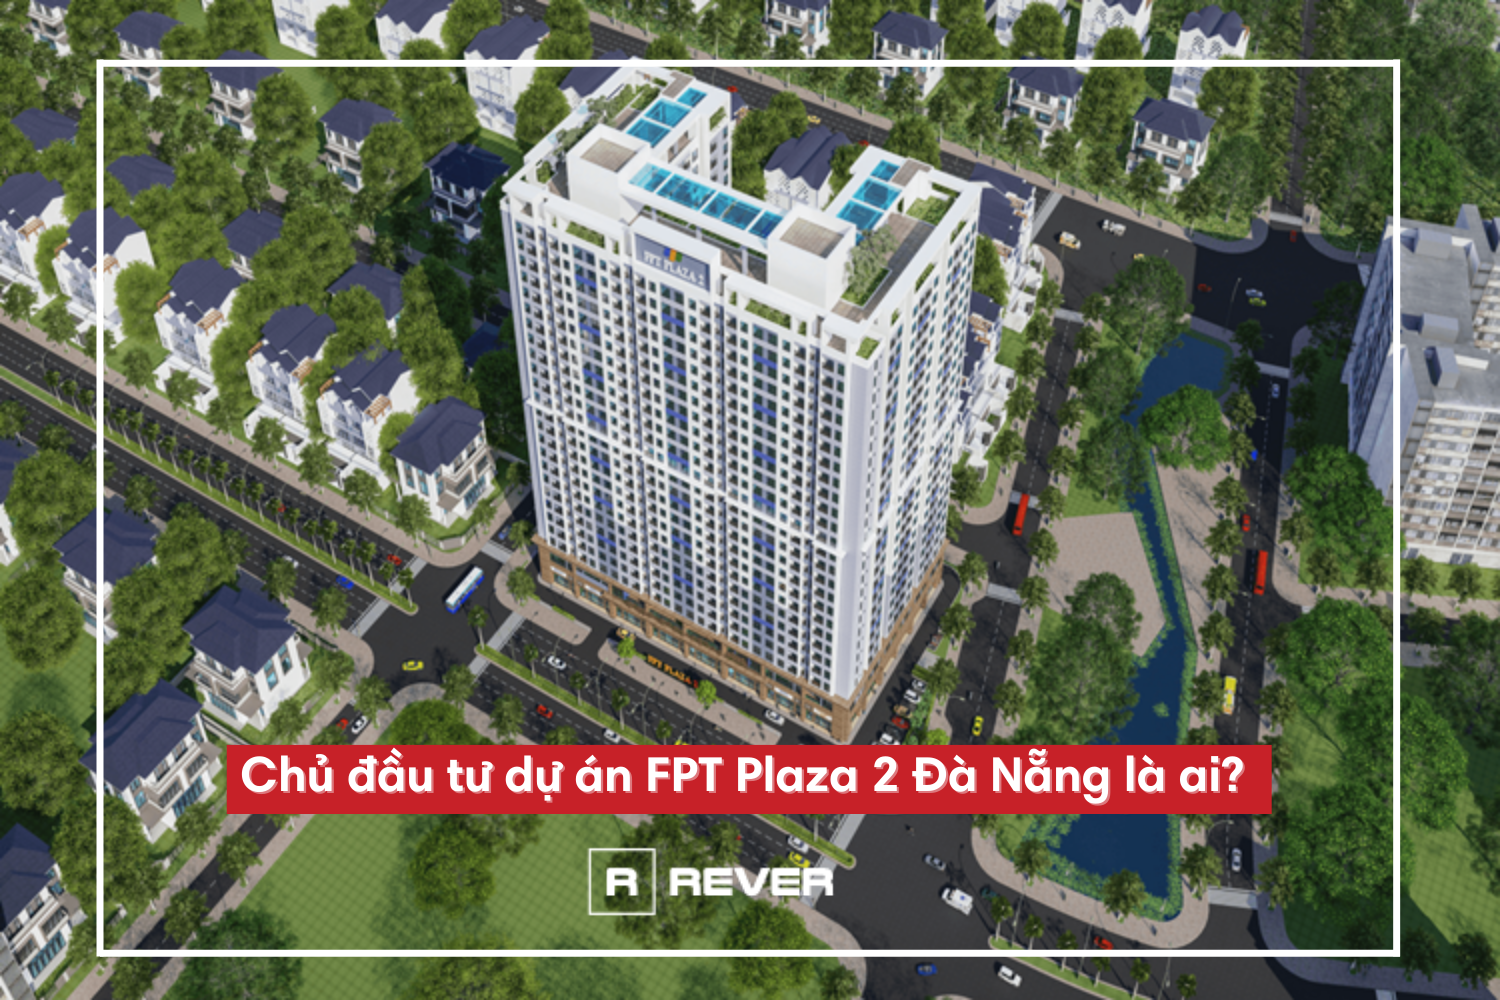 Chủ đầu tư dự án FPT Plaza 2 Đà Nẵng là ai?